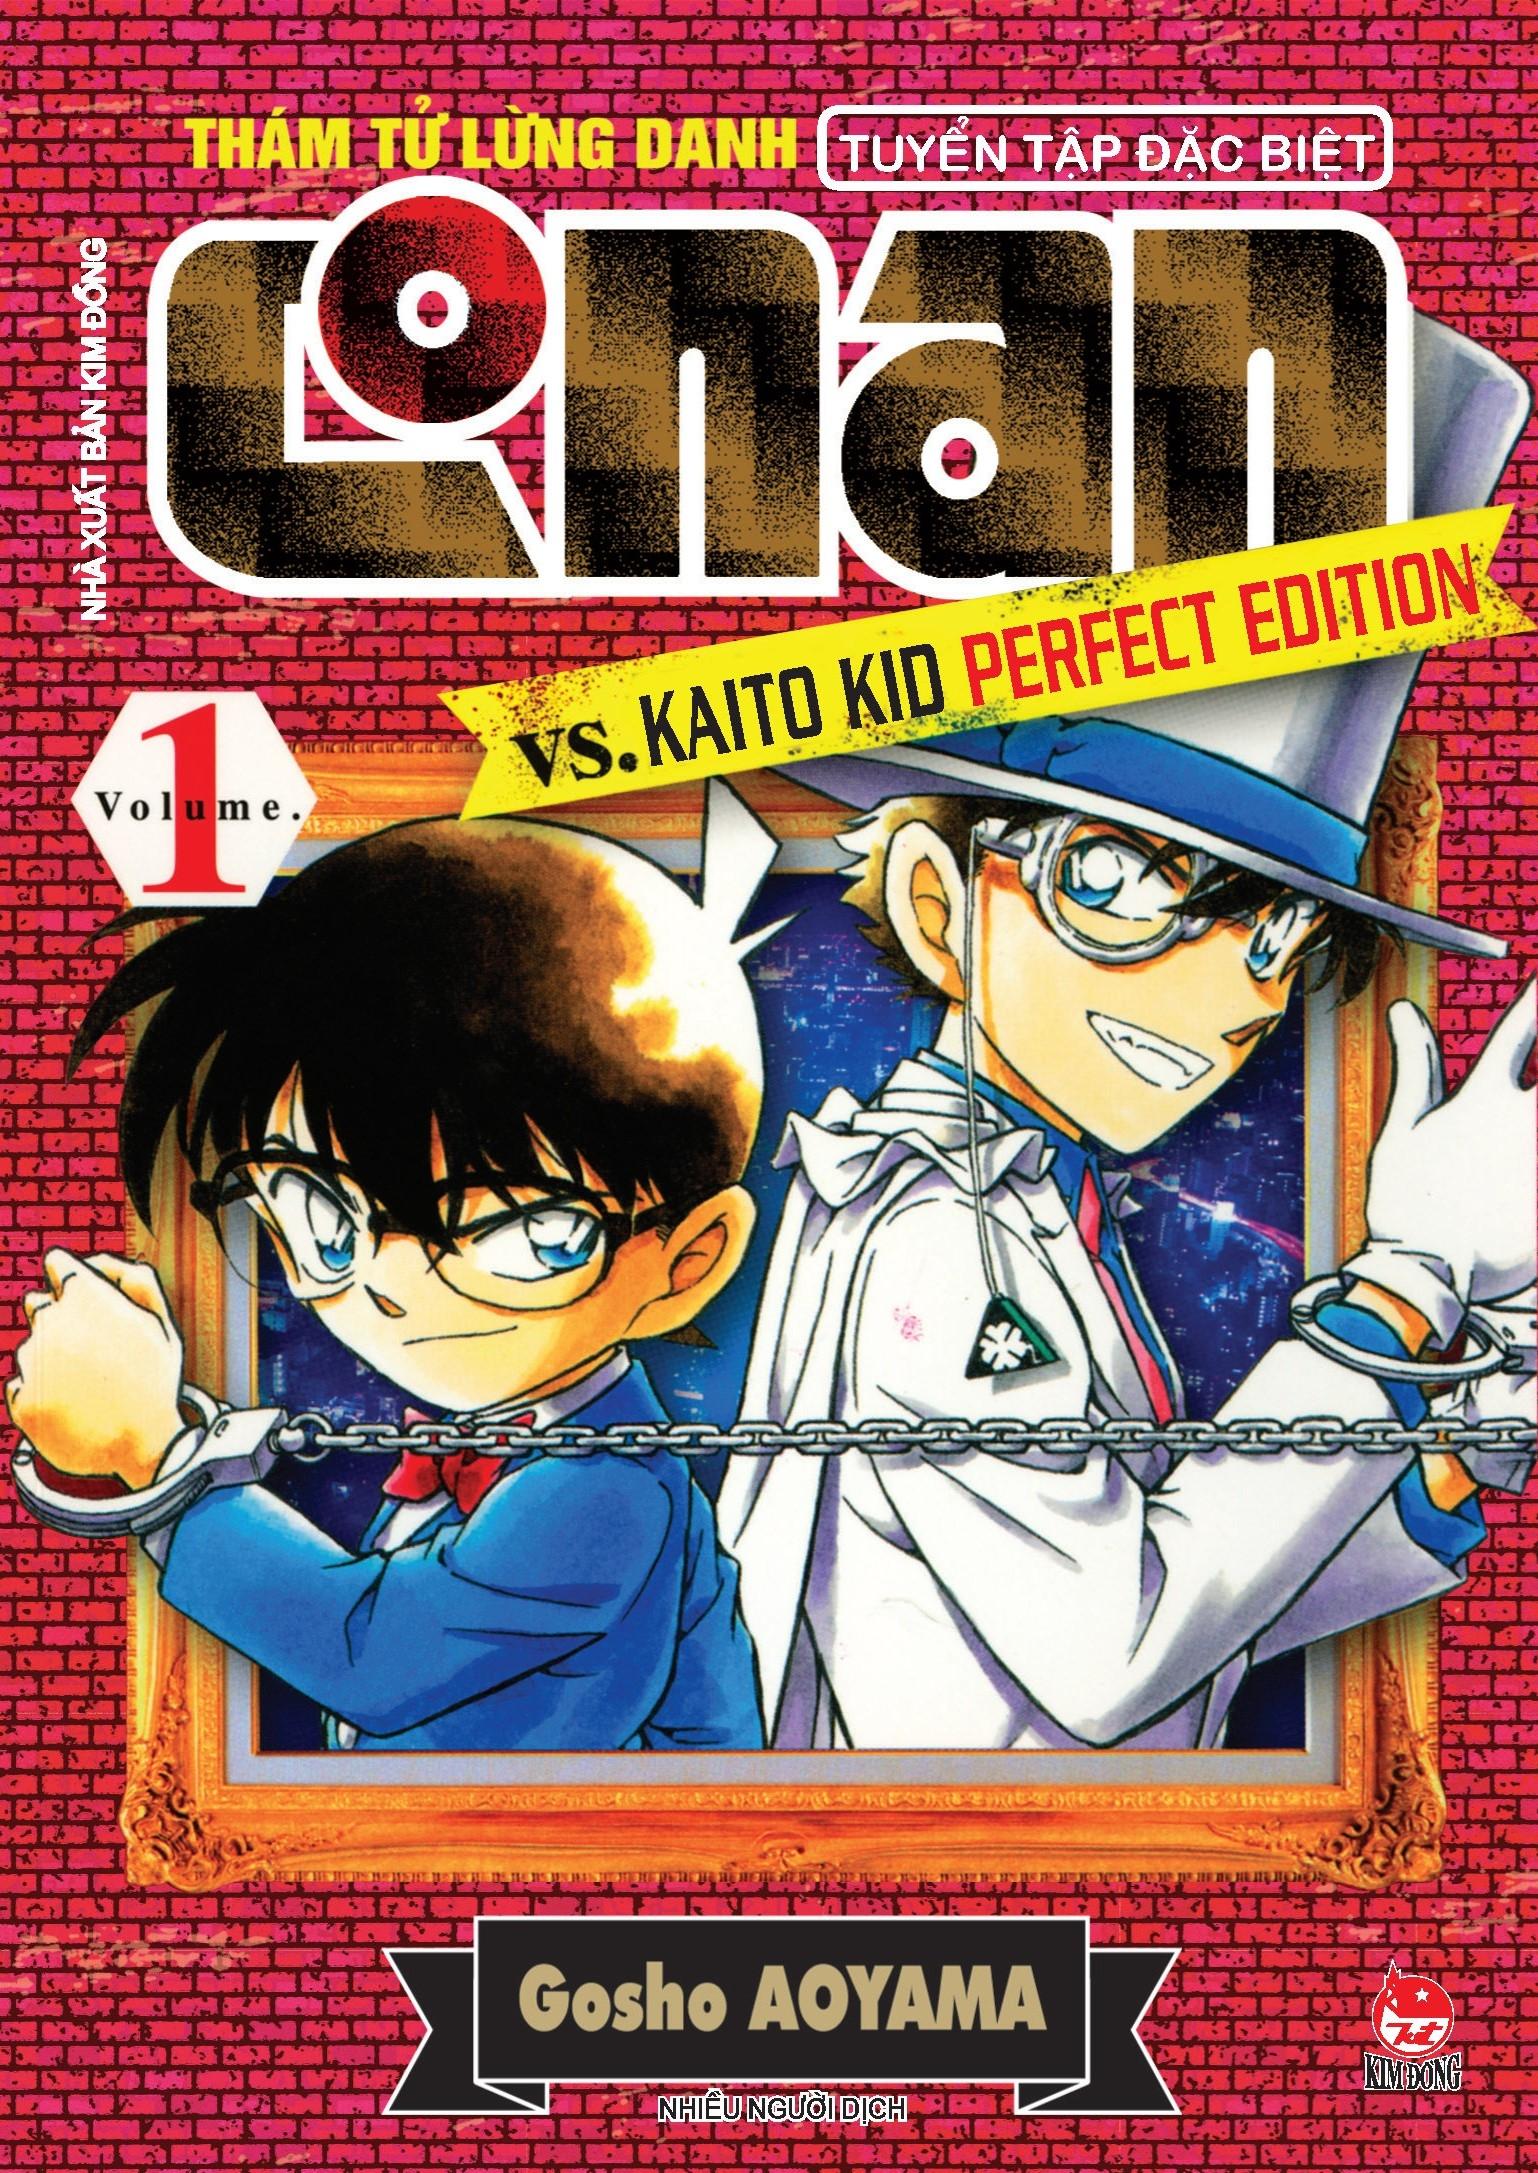 Thám Tử Lừng Danh Conan Tuyển Tập Đặc Biệt - Vs. Kaito Kid Perfect Edition - Tập 1